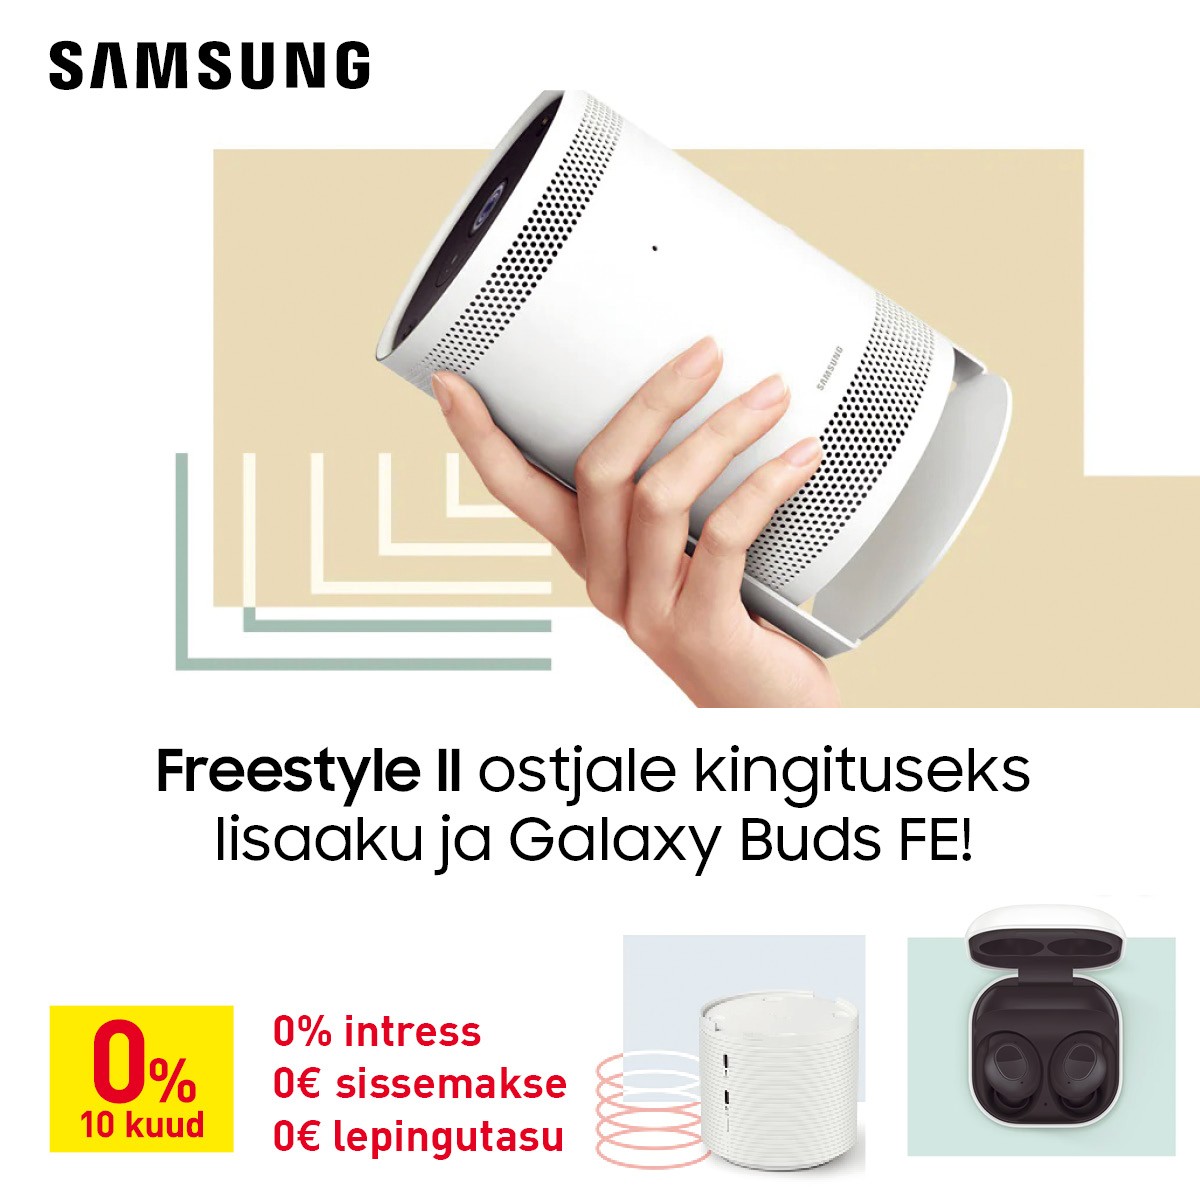 Samsung Freestyle II ostjale kingituseks lisaaku ja Buds FE (mustad) kõrvaklapid